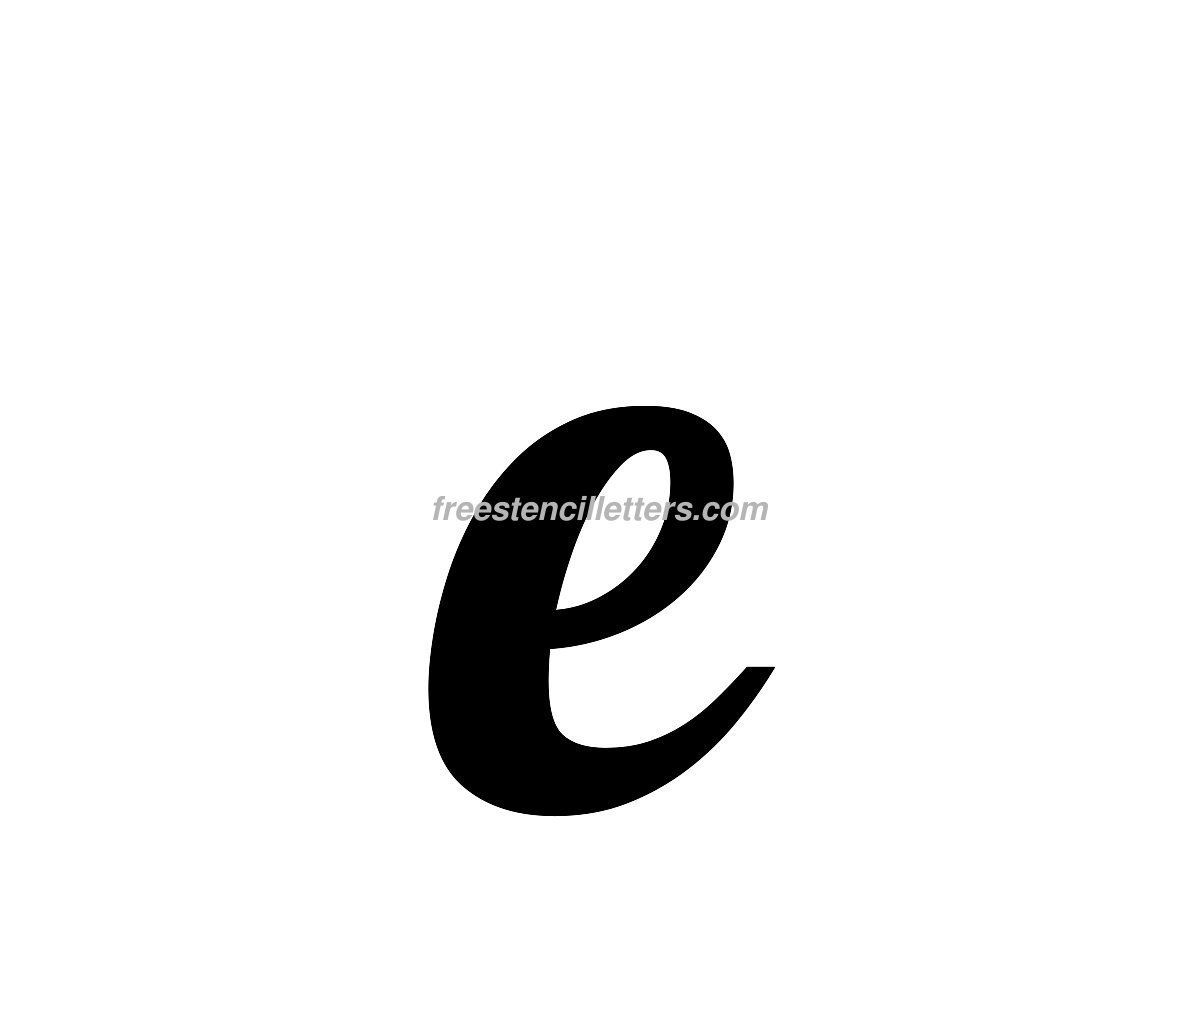 Print Small E Letter Stencil